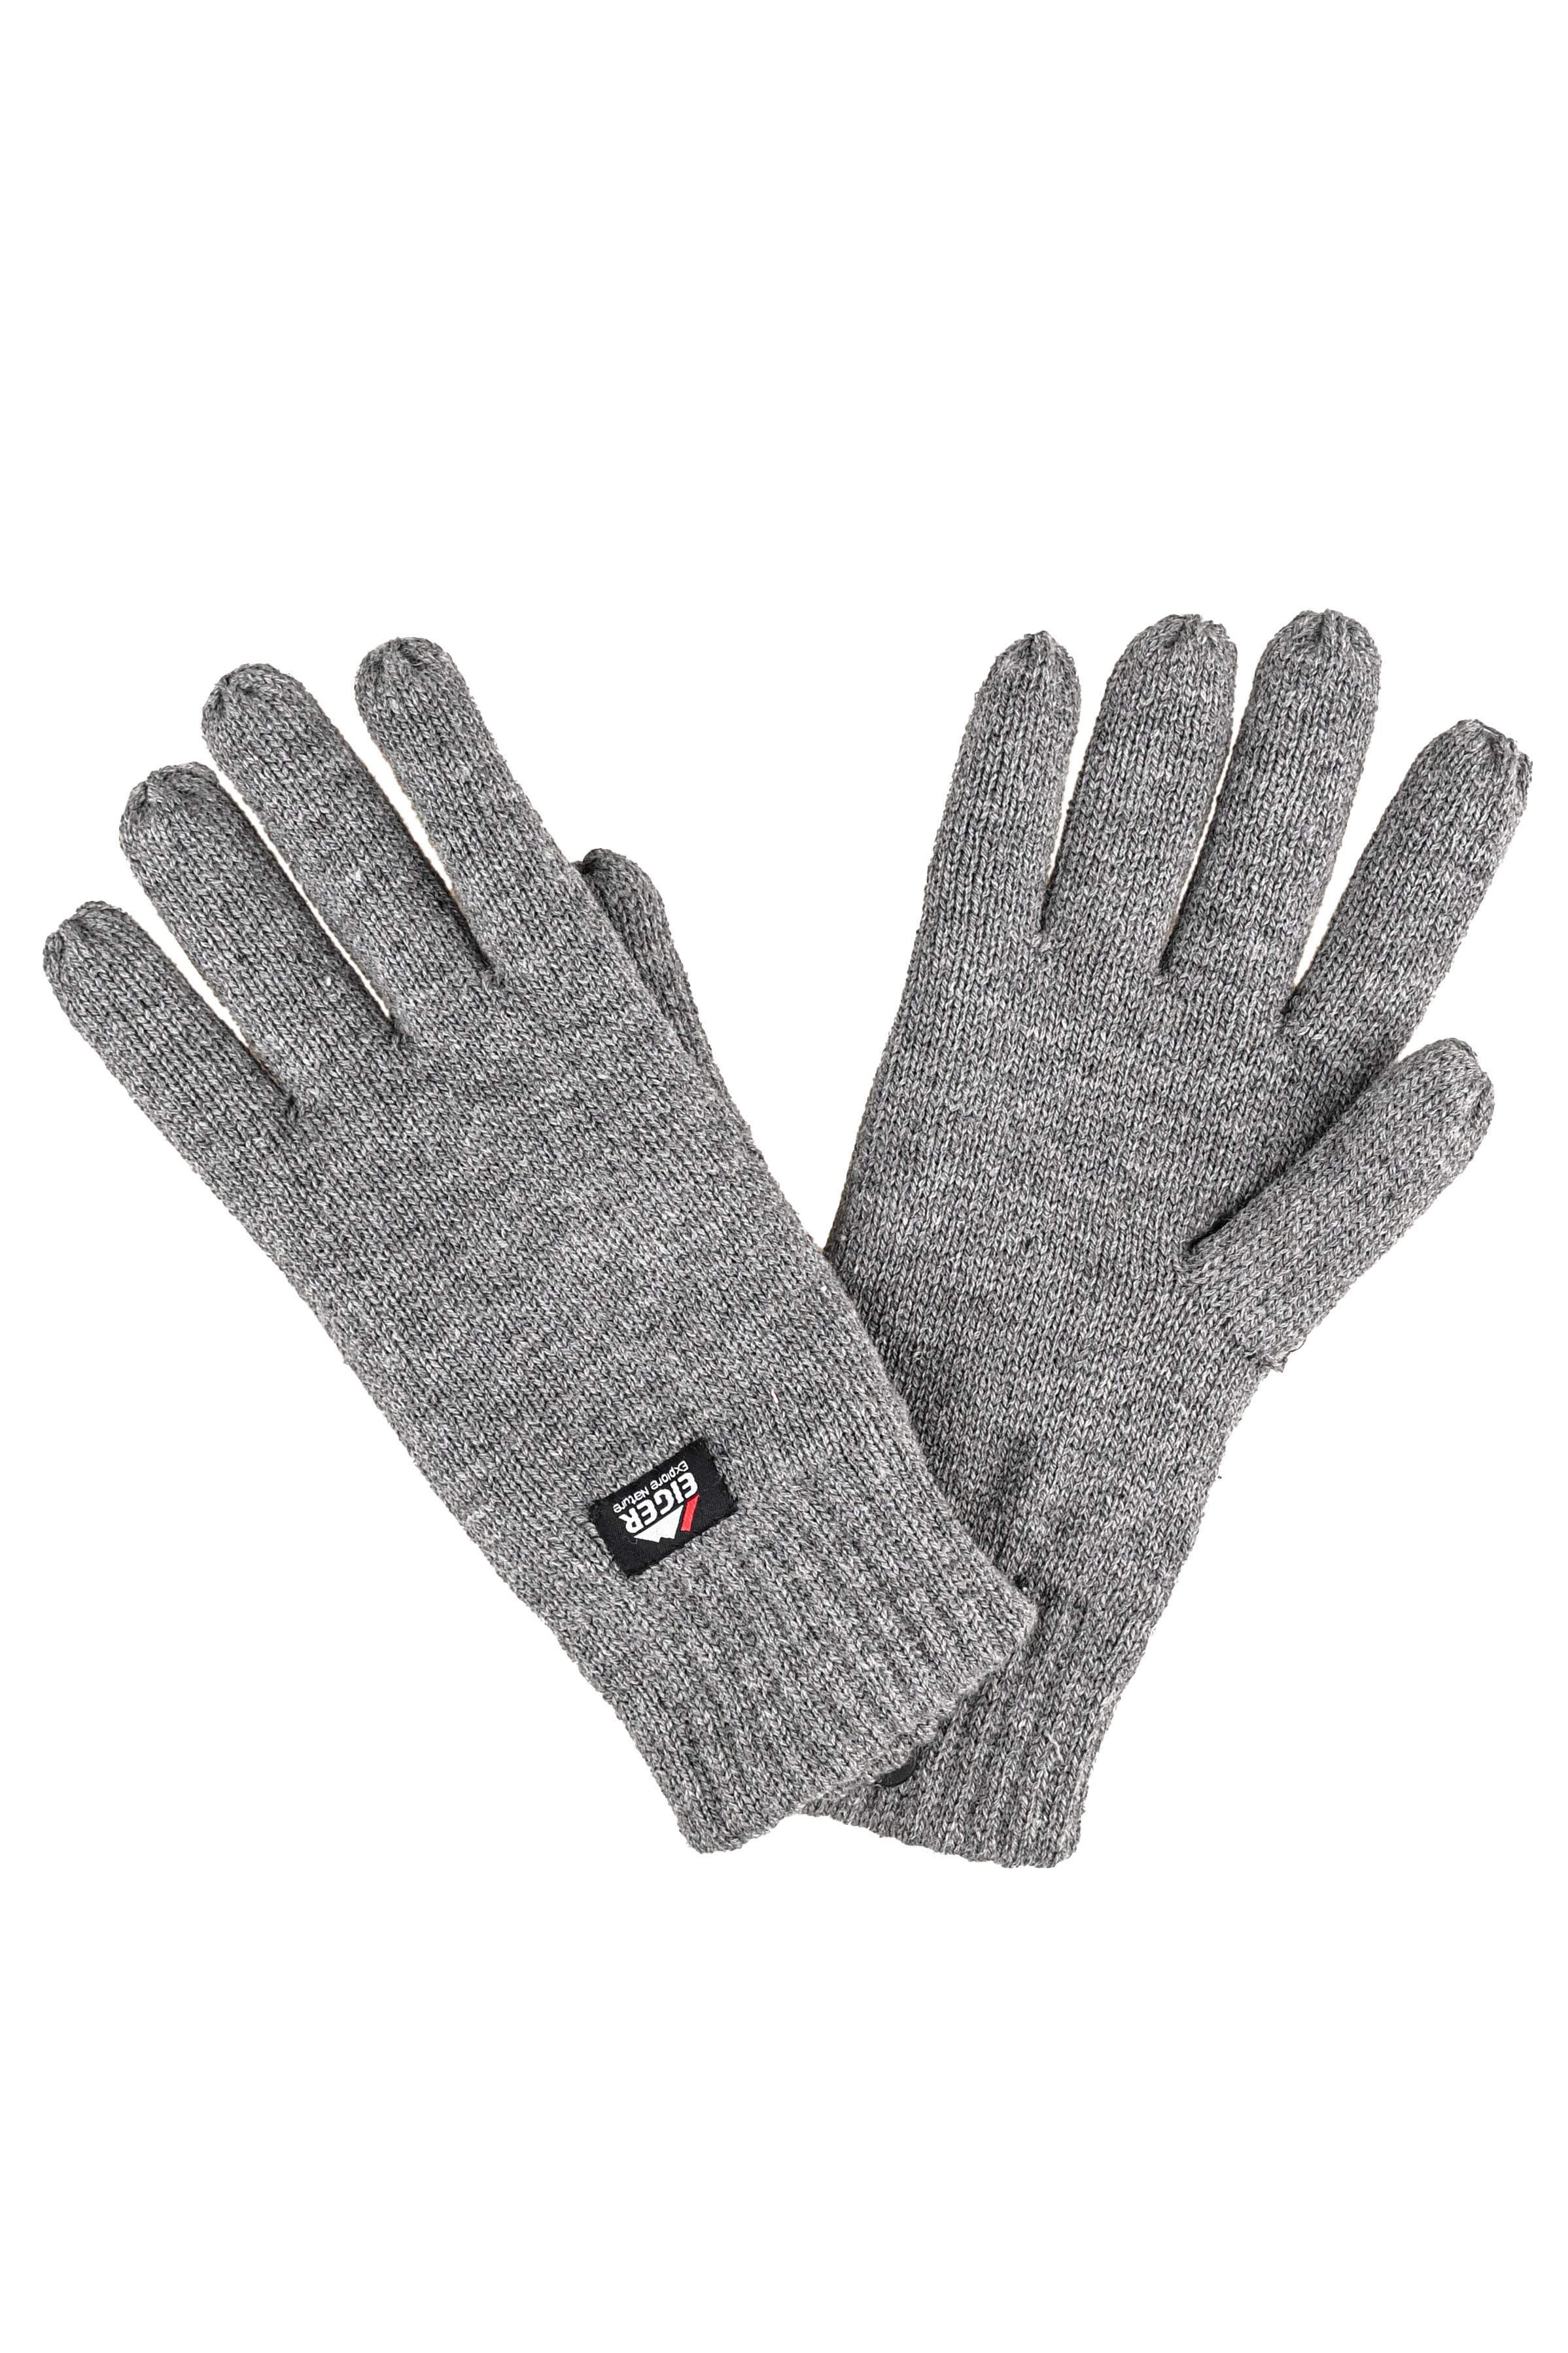 Перчатки Eiger Knitted w/3M thinsulate lining grey - фото 1